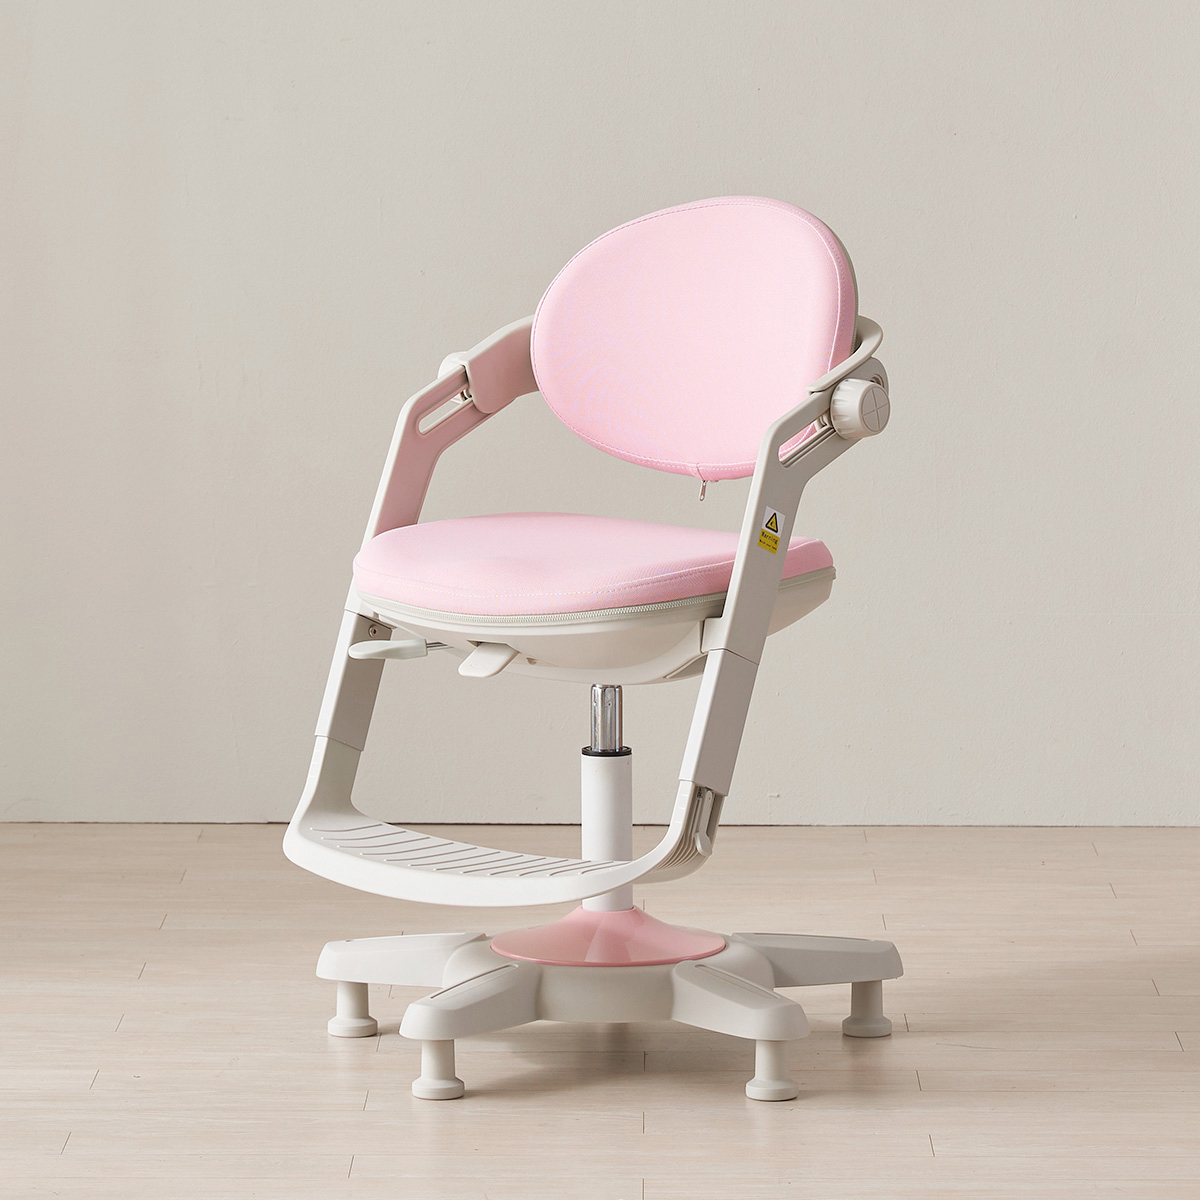 핀란디아 제니오 아동 높낮이 조절 의자 - 핑크